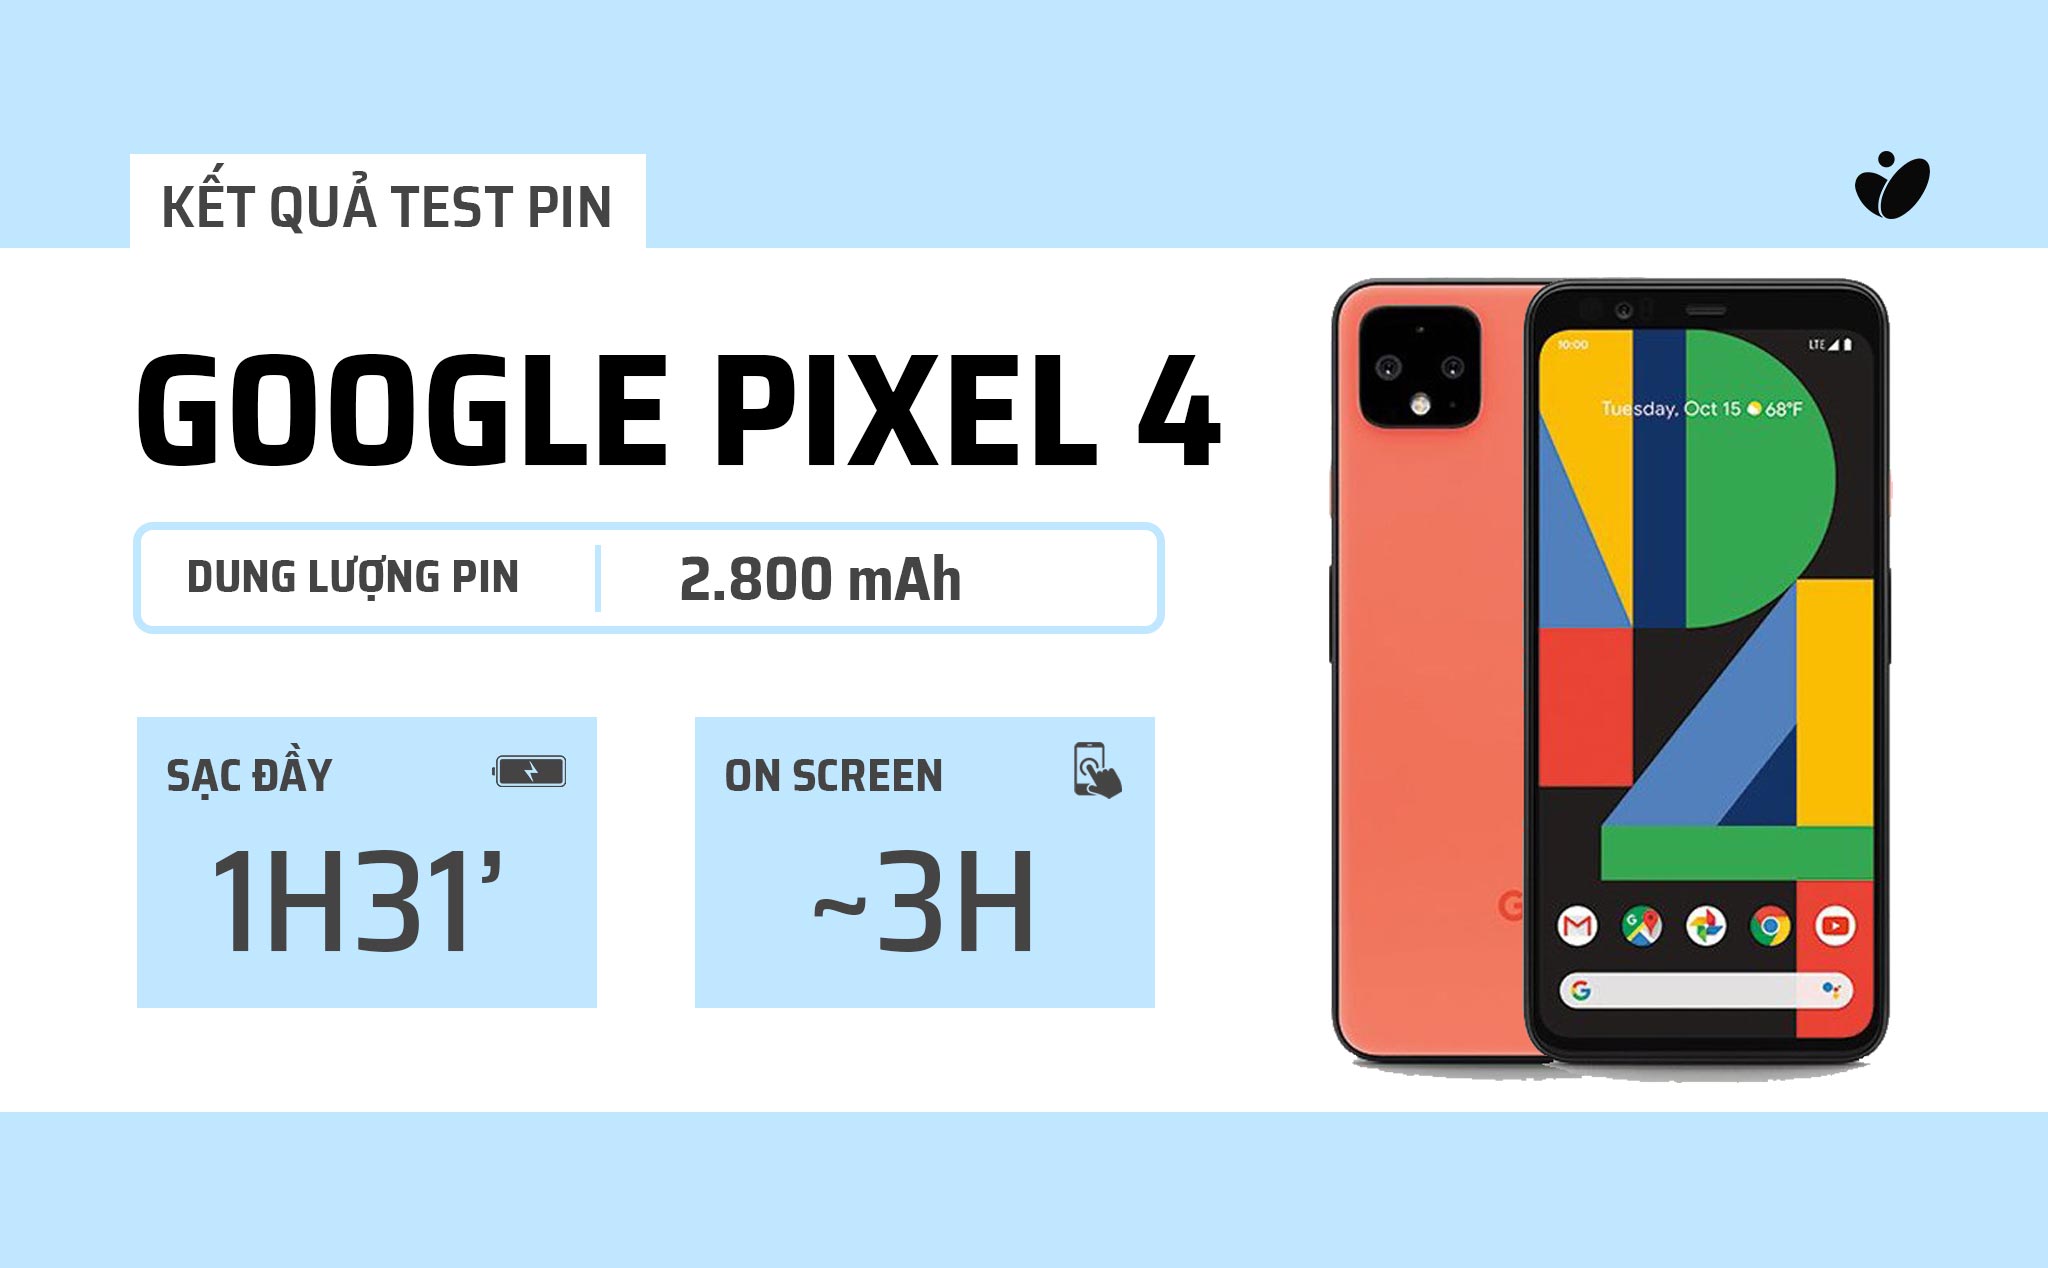 Đánh giá pin Google Pixel 4: khoảng 3 tiếng on screen